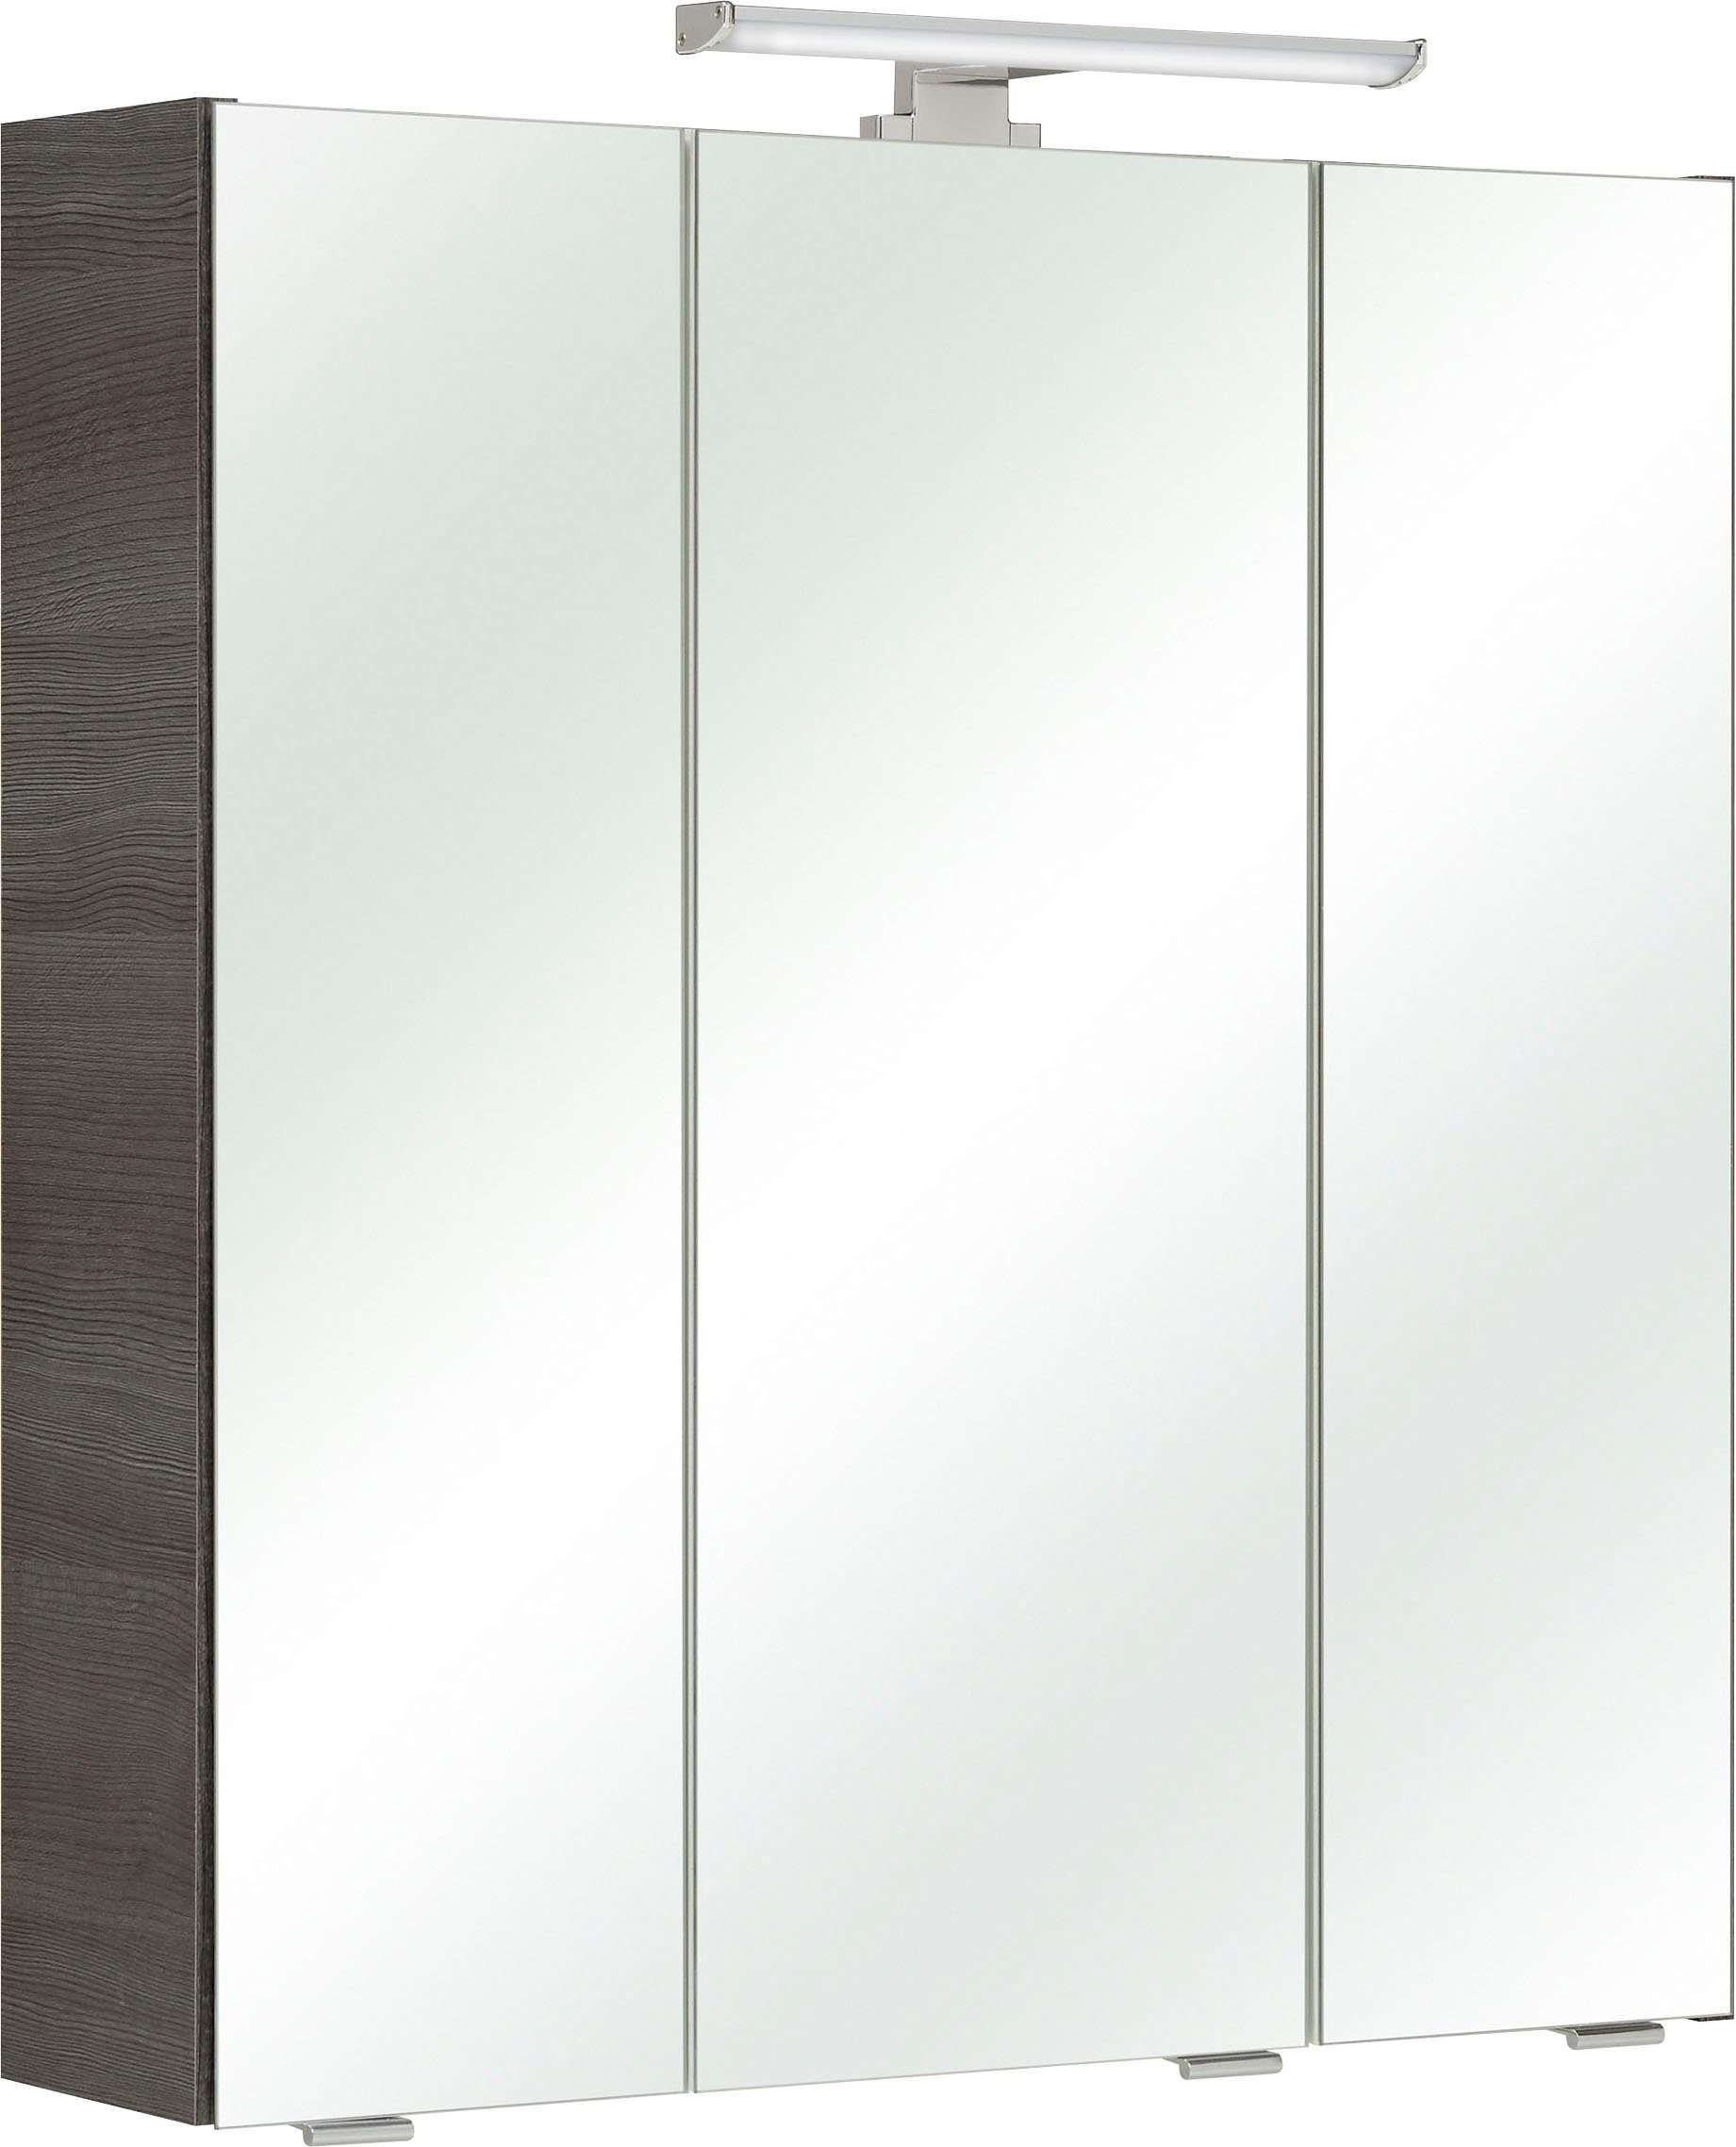 PELIPAL Spiegelkast Quickset Breedte 65 cm, 3-deurs, ledverlichting, schakelaar/contactdoos, deurdemper